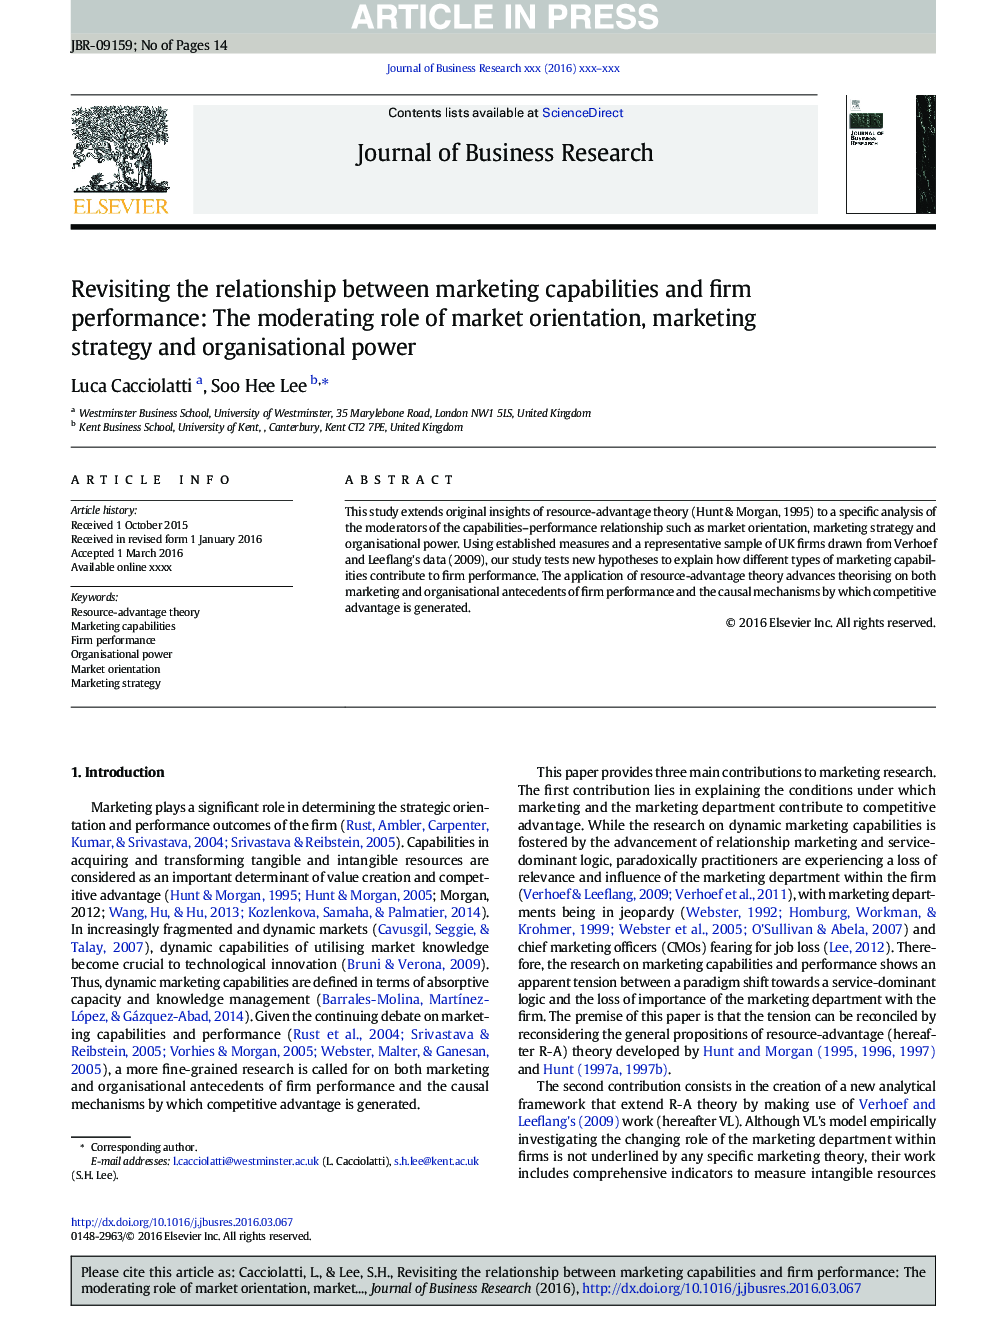 بازنگری رابطه بین قابلیت های بازاریابی و عملکرد شرکت: نقش مدرن جهت گیری بازار، استراتژی بازاریابی و قدرت سازمانی 